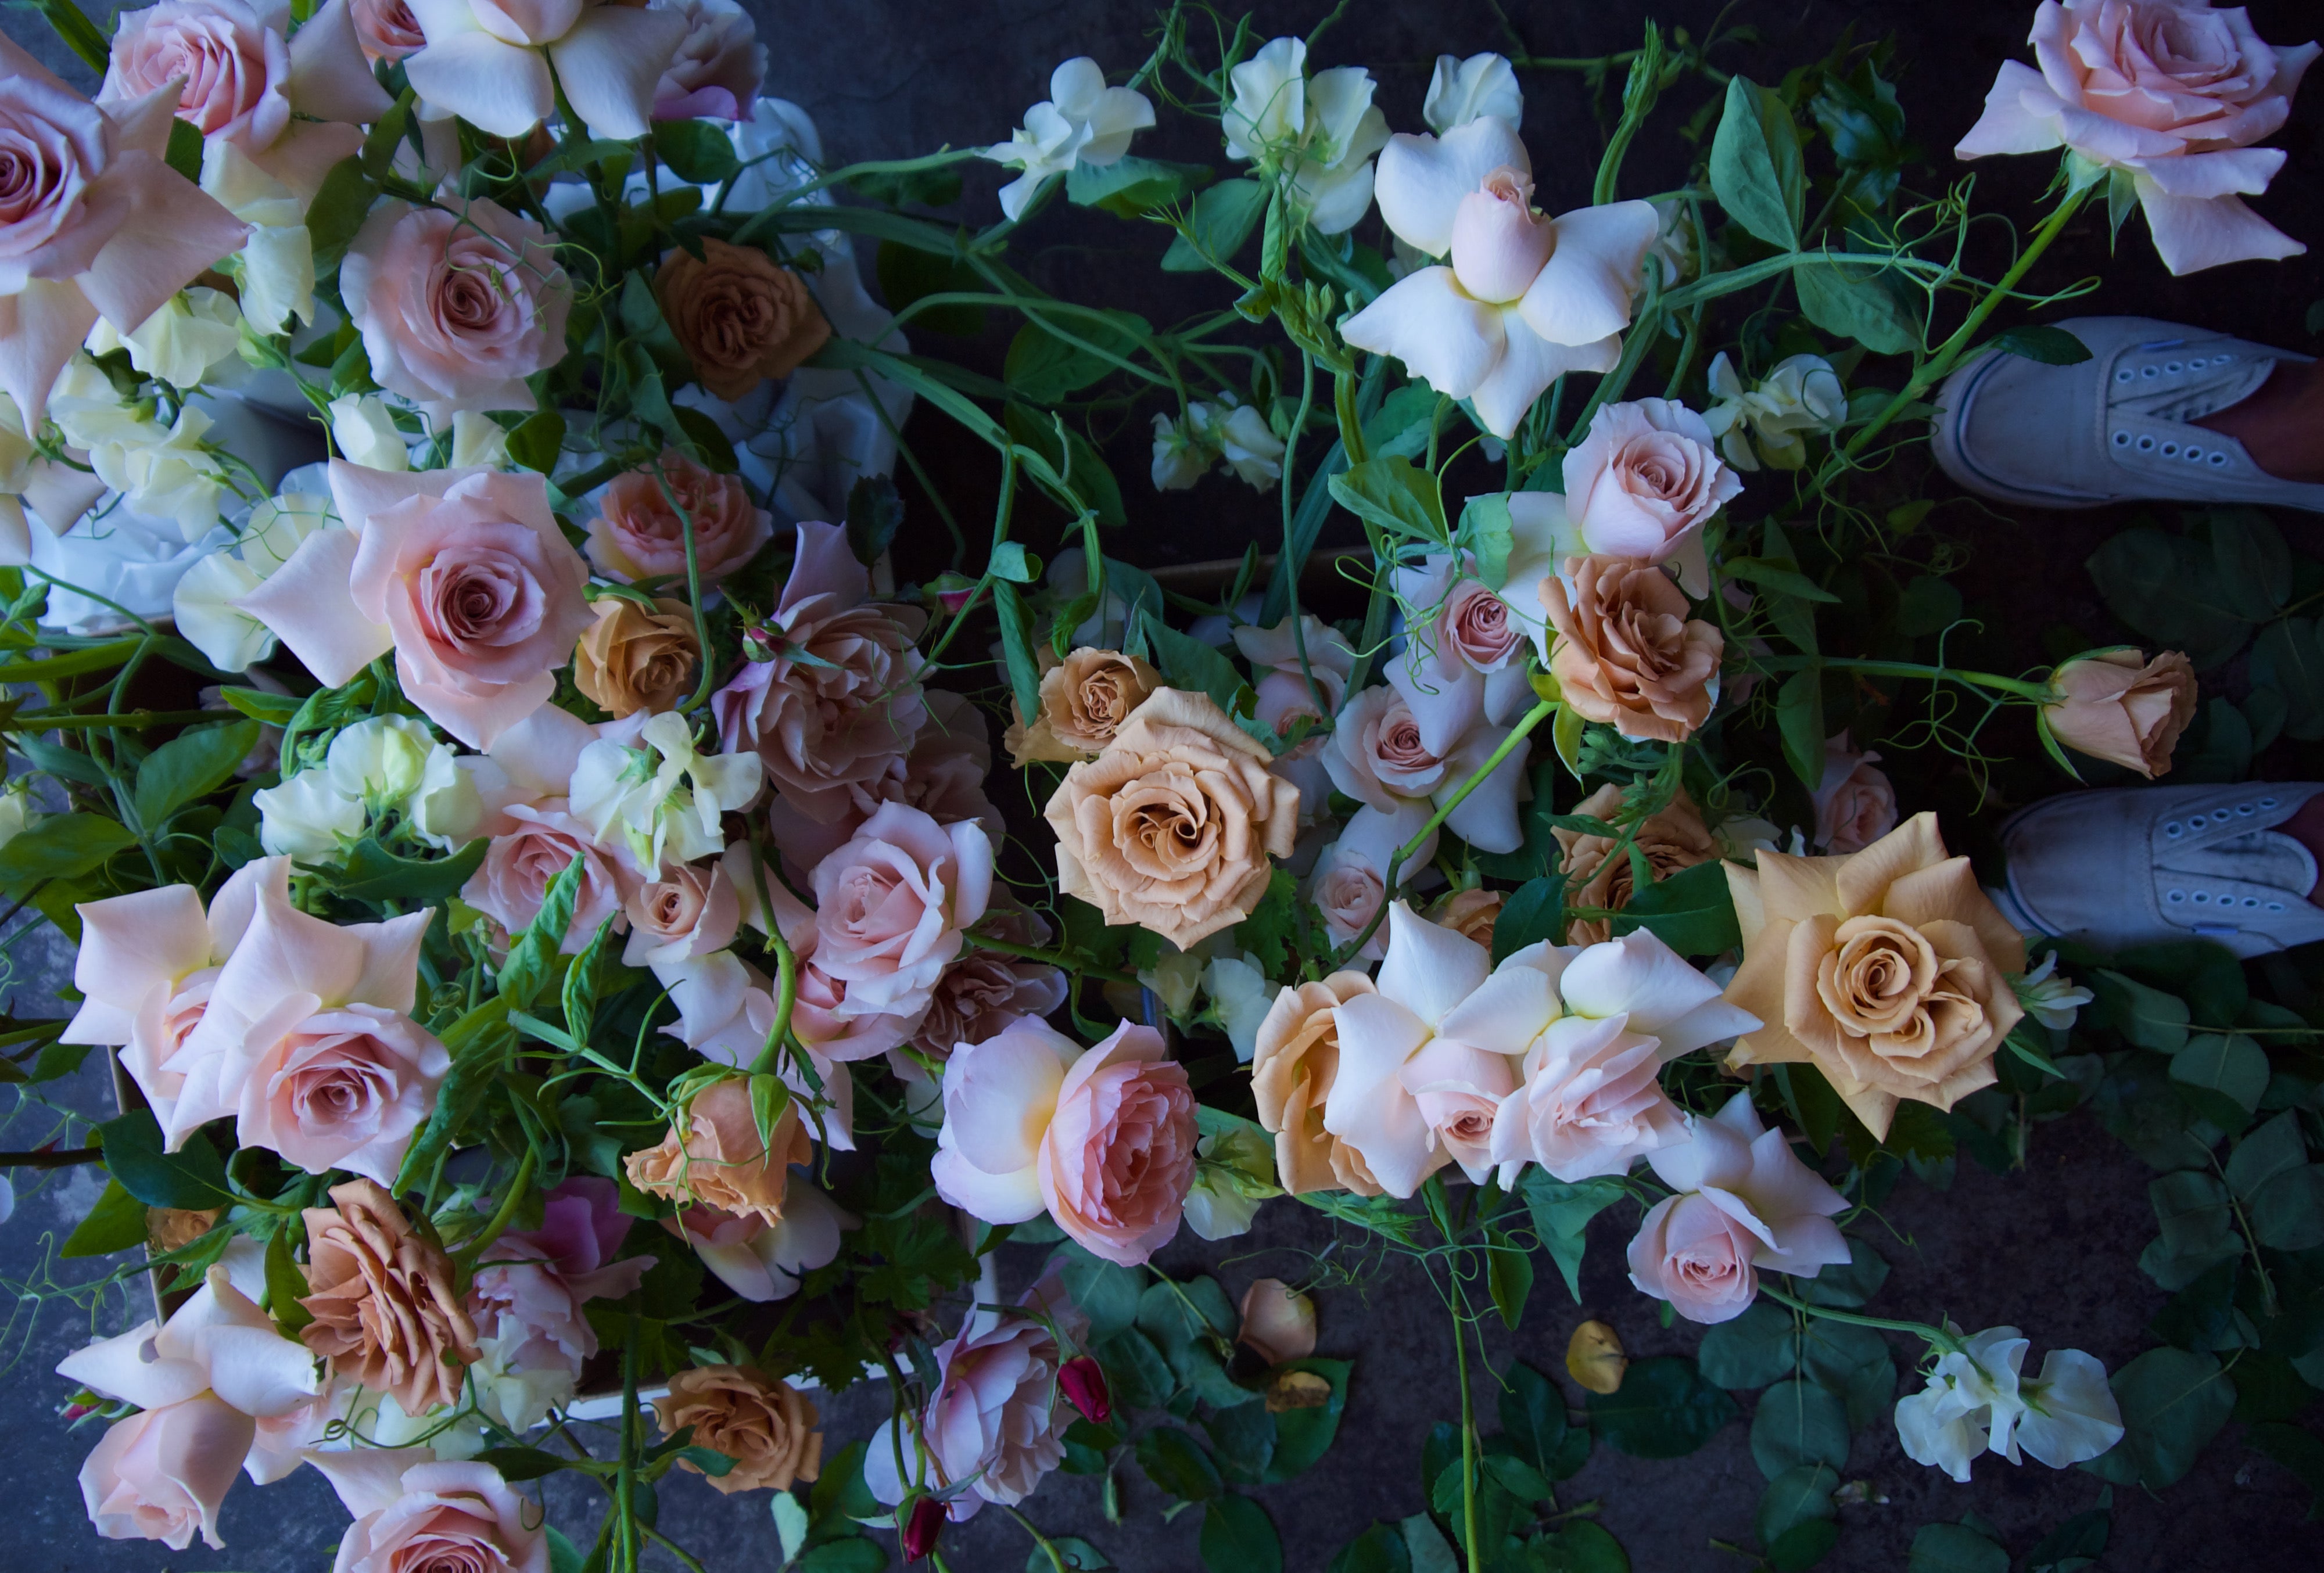 Best Portland wedding florists – Fieldwork Flowers